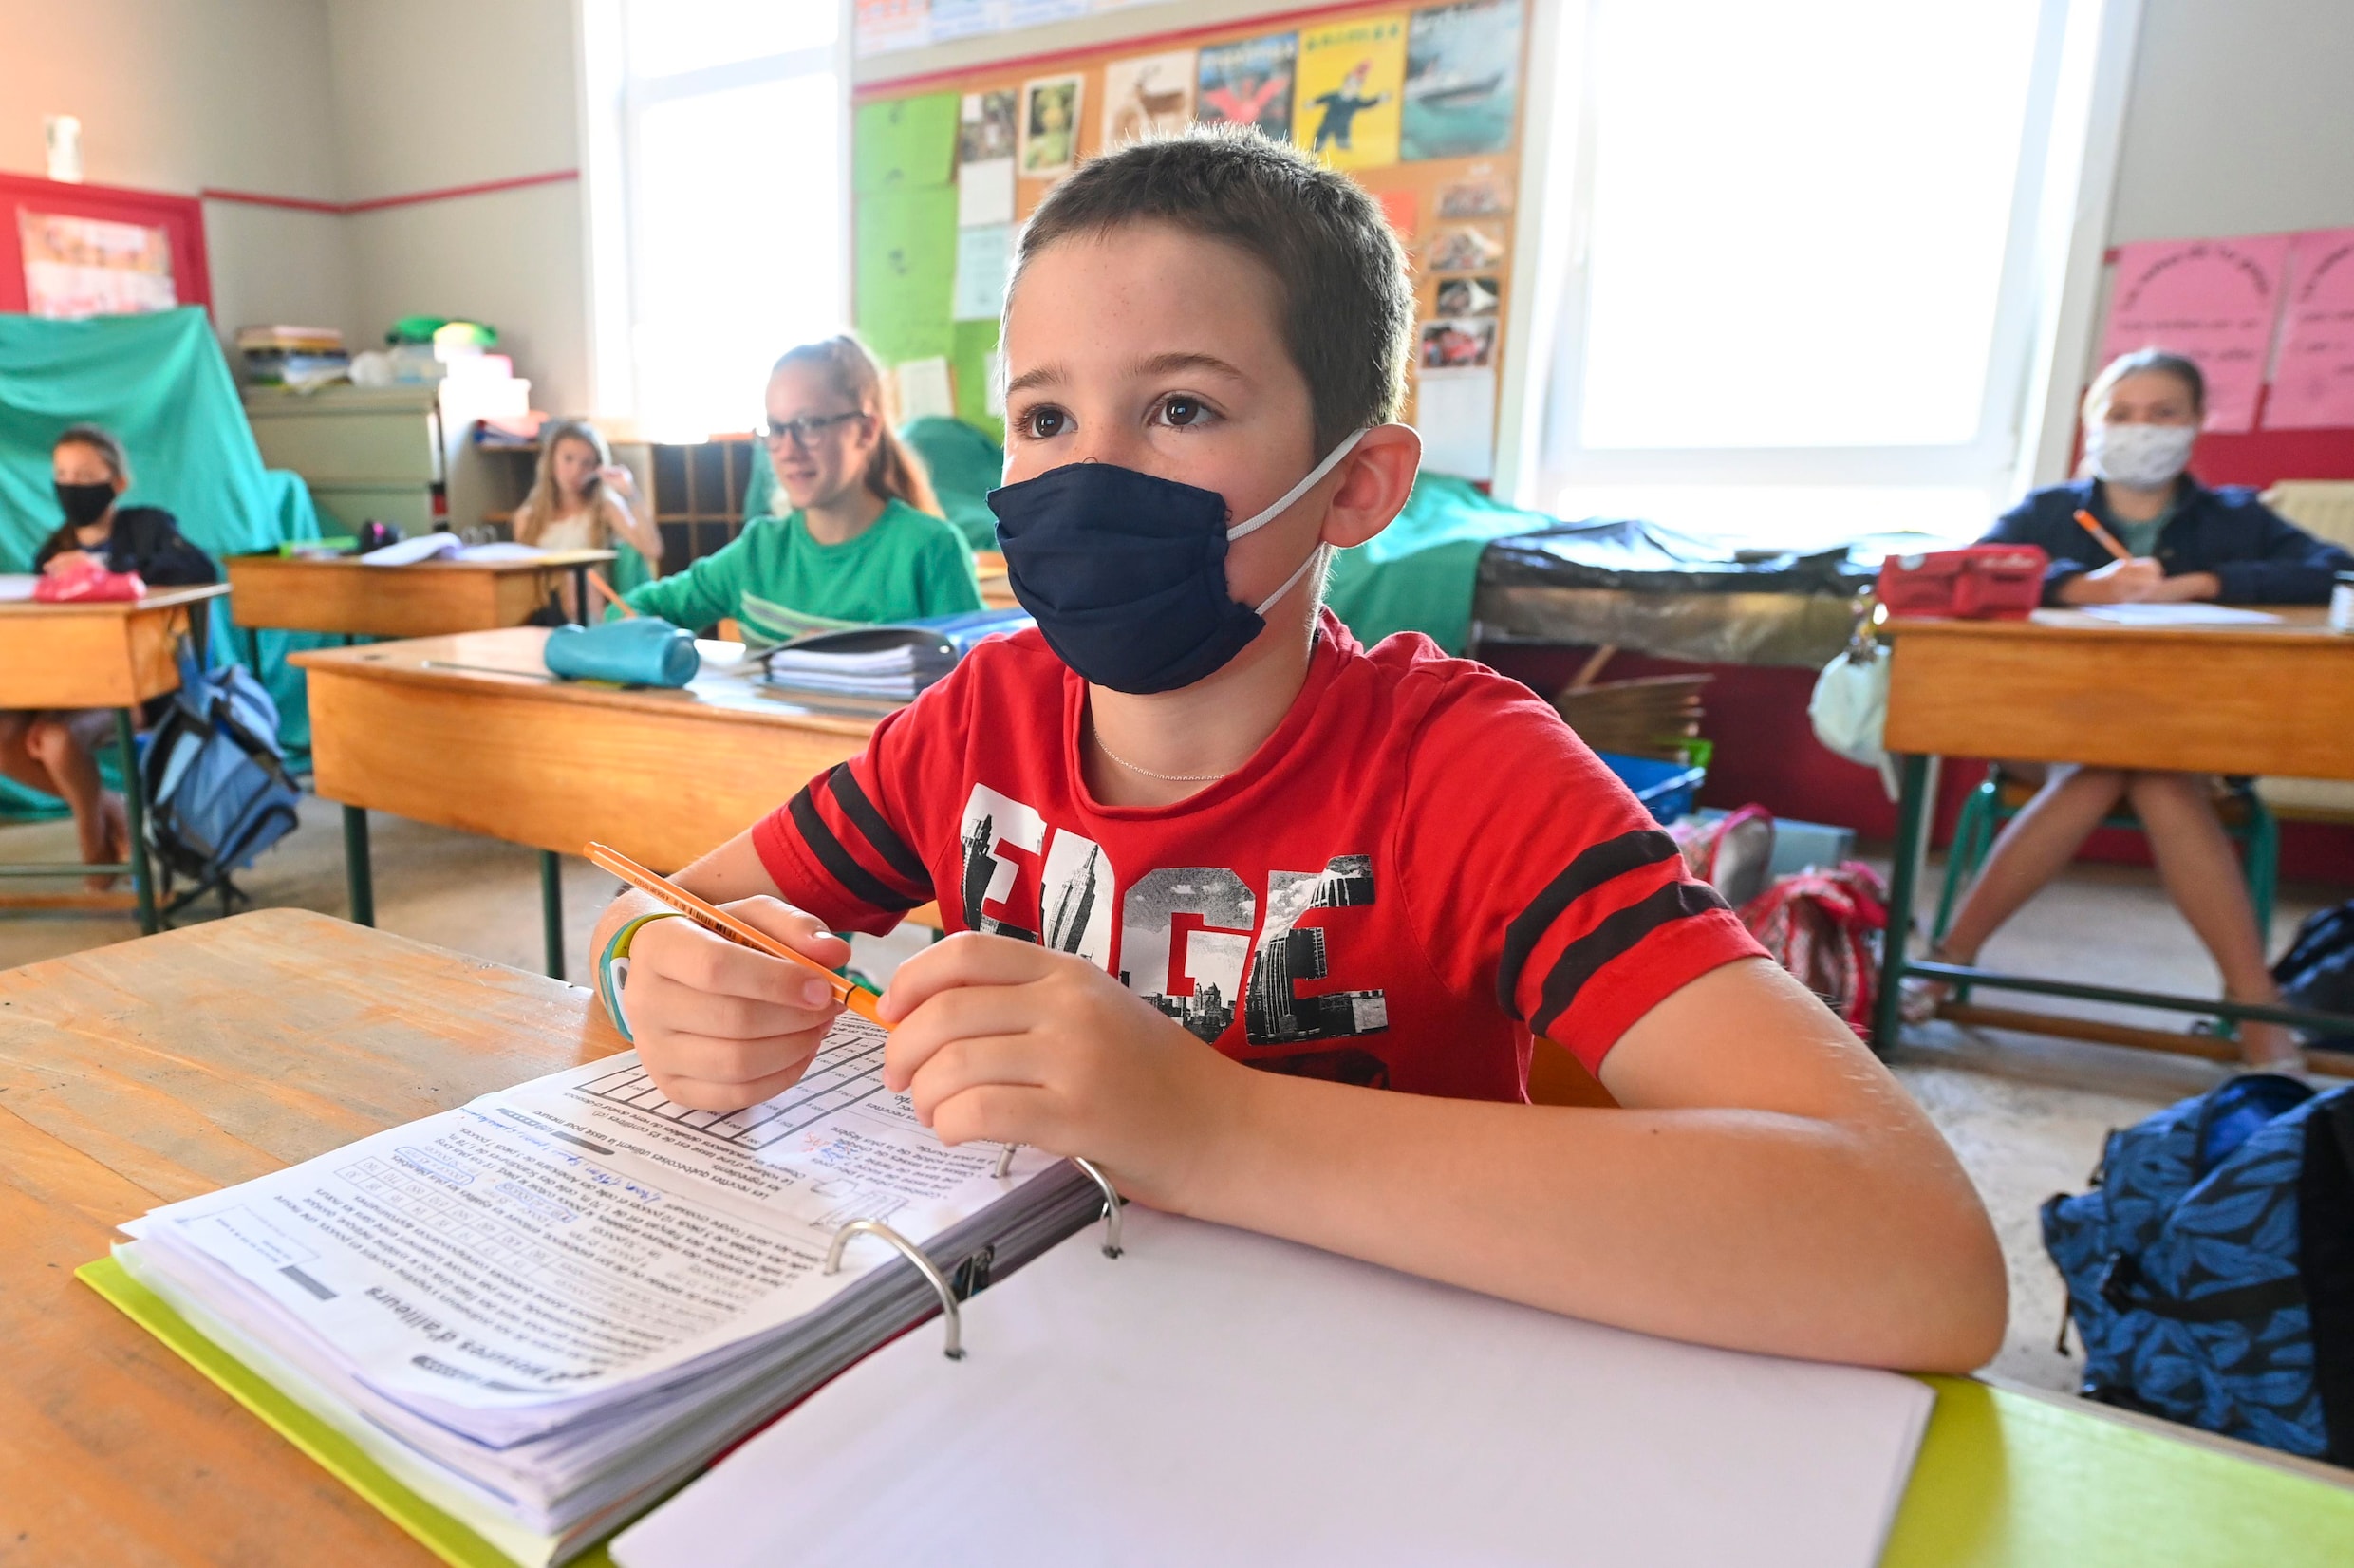 Mondmasker in de klas voor kinderen jonger dan twaalf? ‘Zeg nooit nooit’